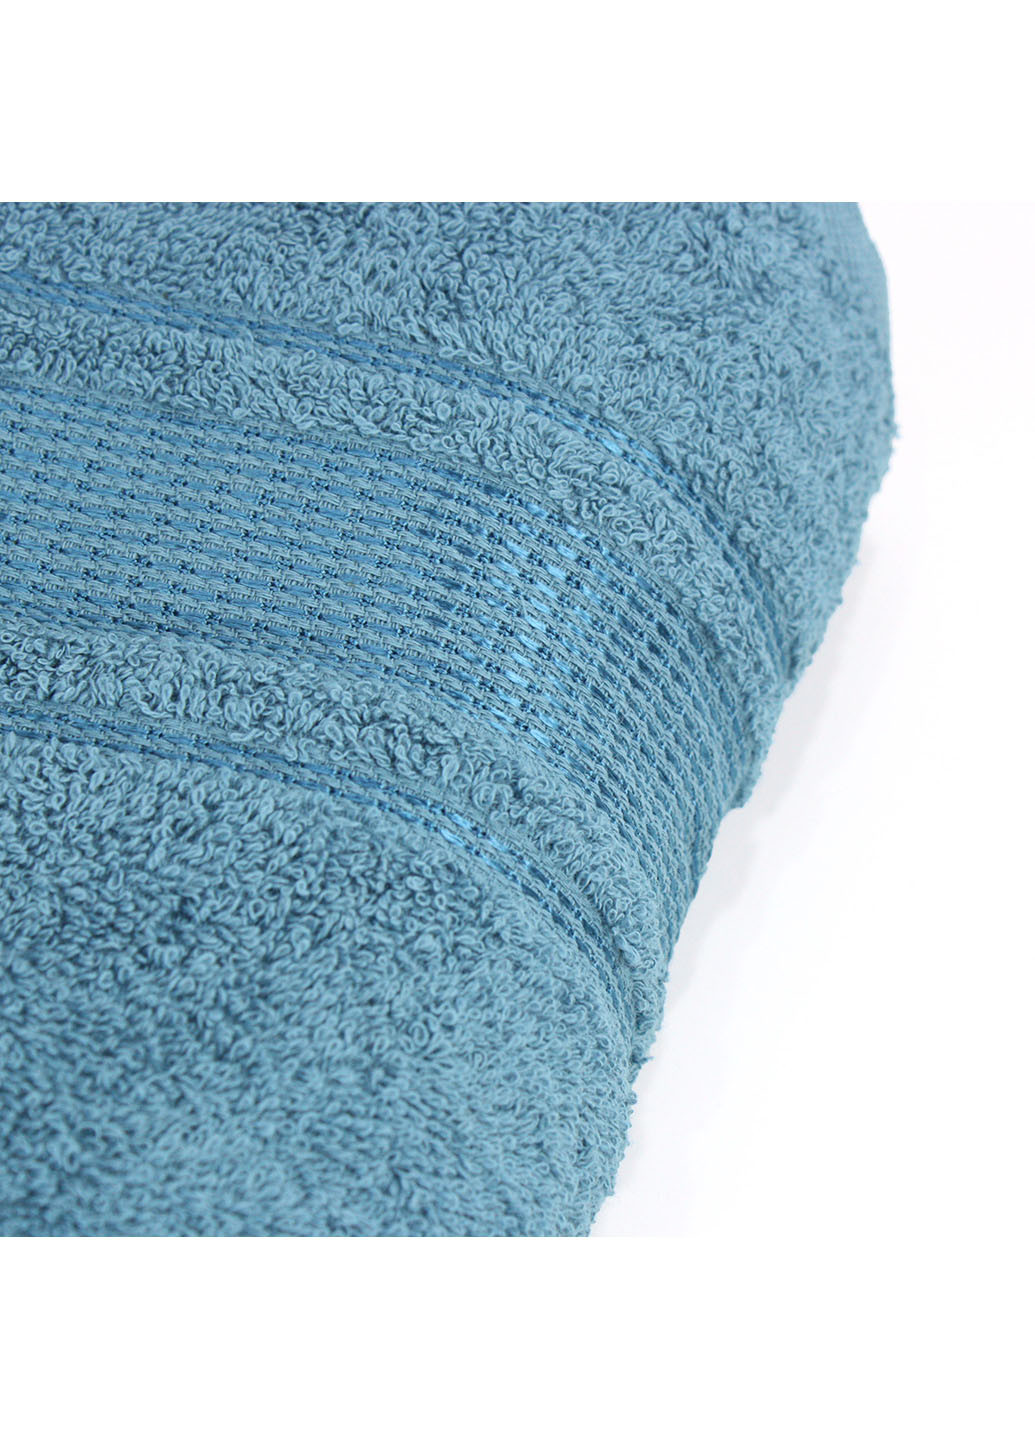 Еней-Плюс полотенце махровое бз0014 70х140 синий производство - Украина